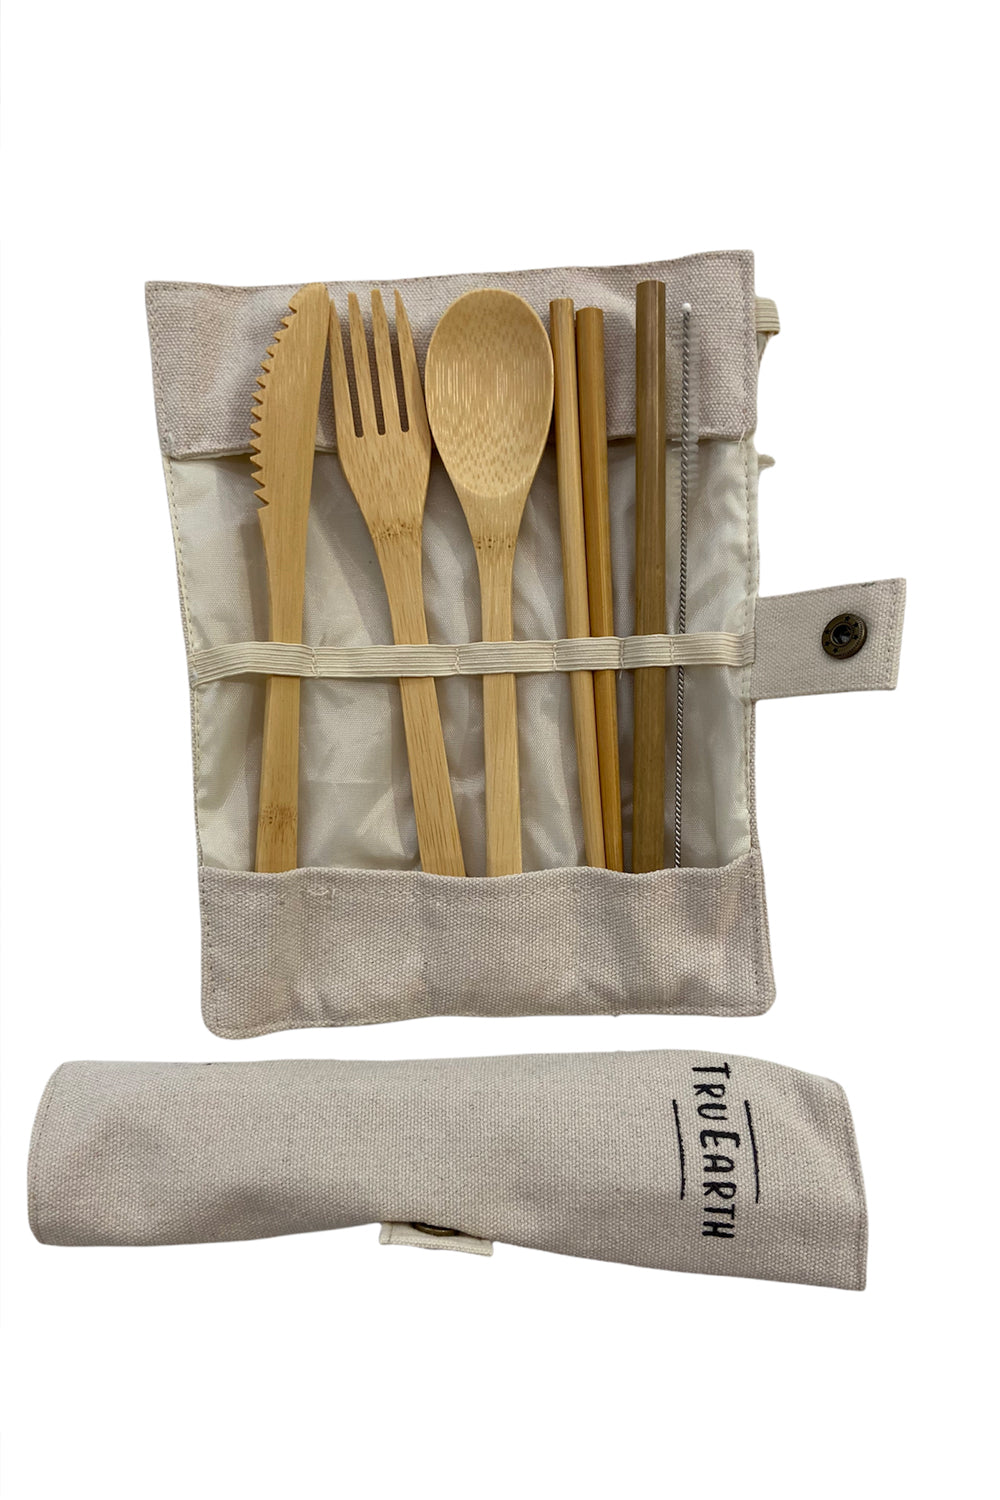 TRU EARTH - Ensemble de coutellerie de bambou (fourchette, cuillère, couteau, baguettes, paille)